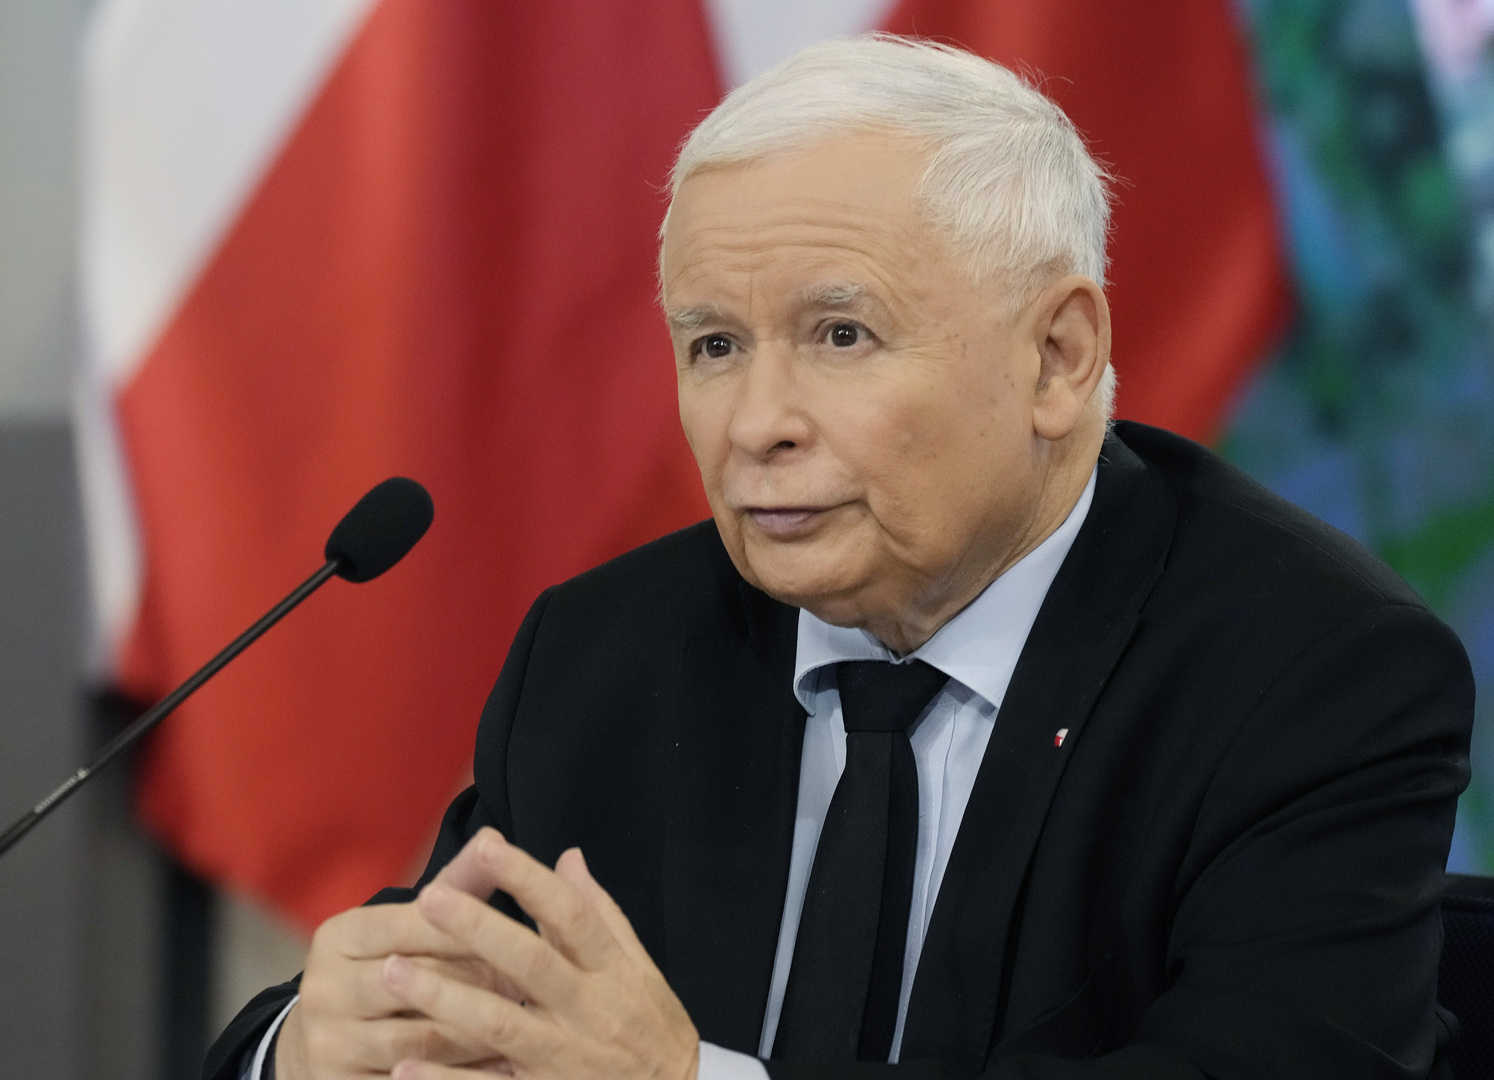 زعيم بولندي يعترف بأن بلاده اشترت برامج تجسس إسرائيلية قوية